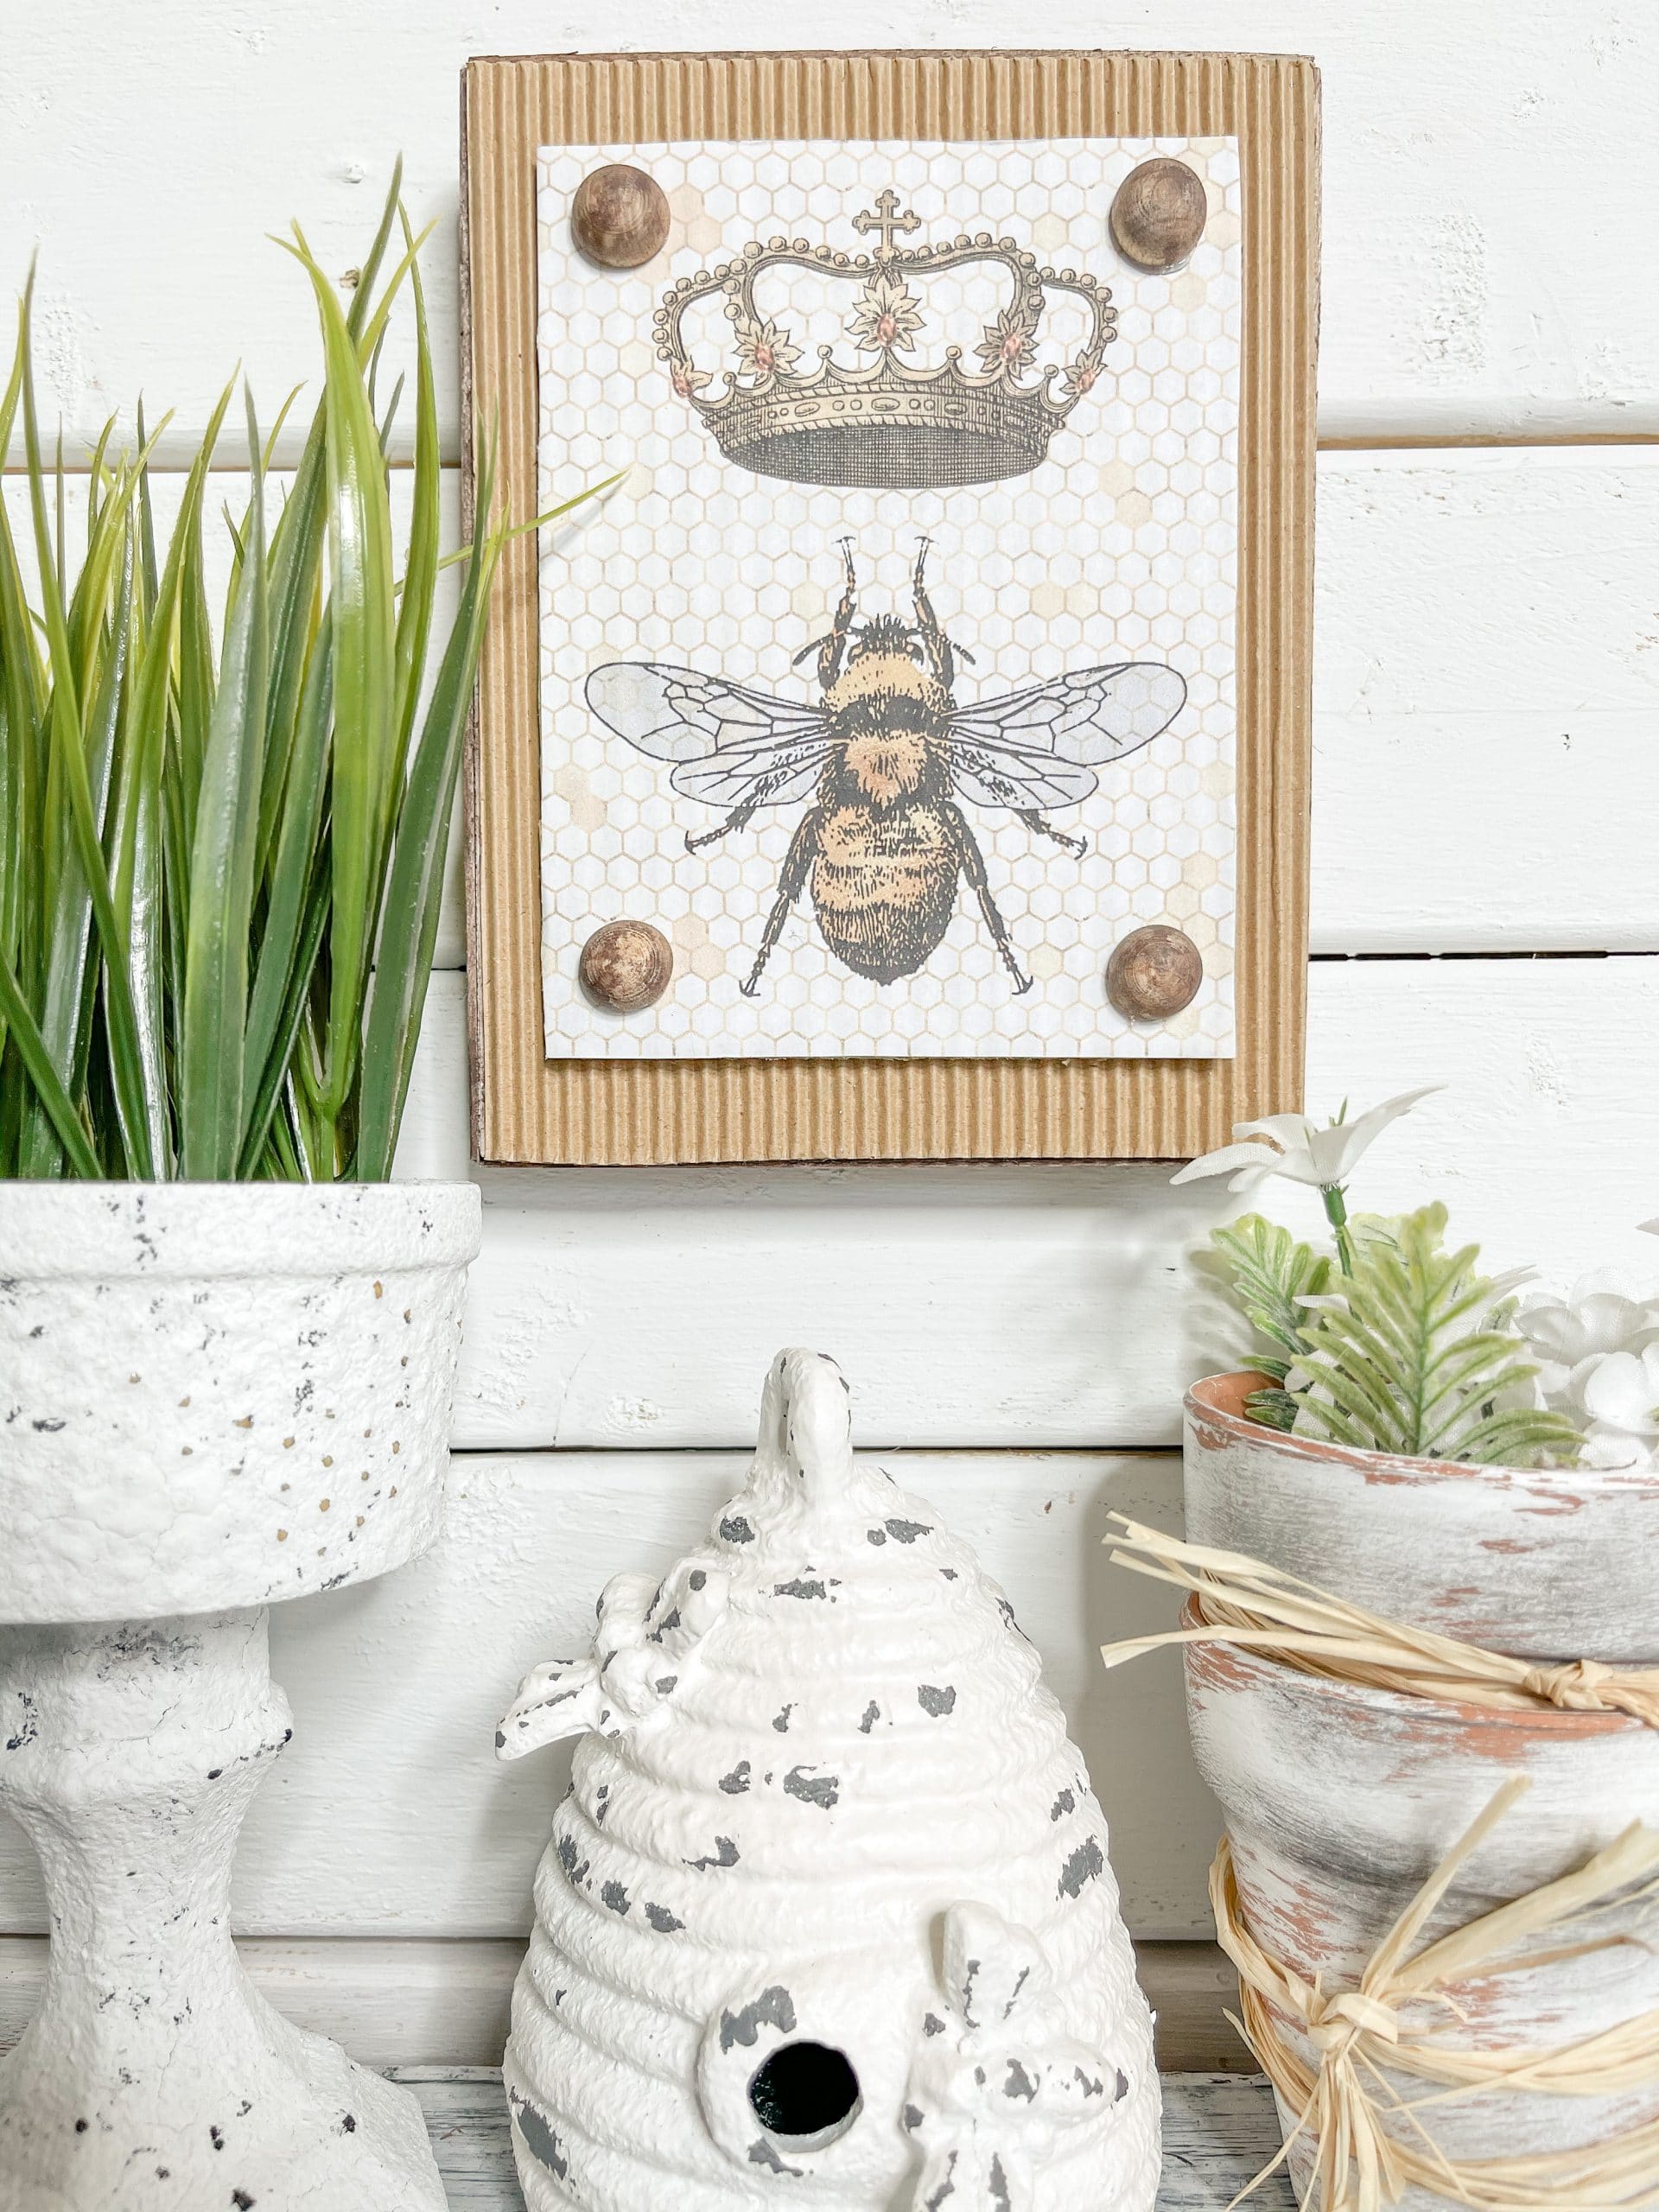 Queen Bee Printable DIY Decor - DIY tutorial